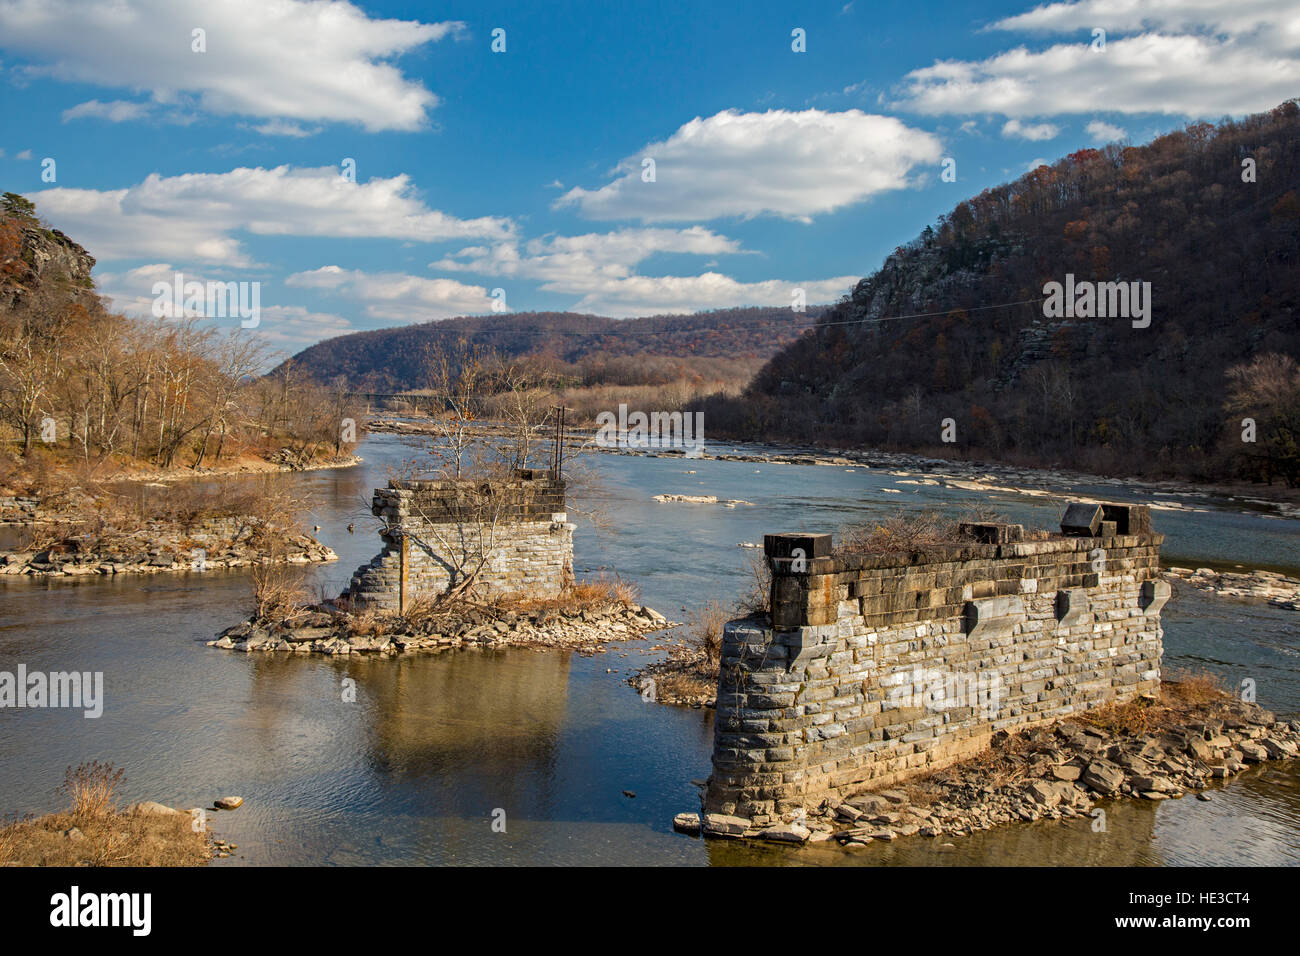 Harpers Ferry, WV - Il fiume Potomac alla confluenza con il fiume Shenandoah. A questo punto, Maryland, Virginia e West Virginia si incontrano. Foto Stock